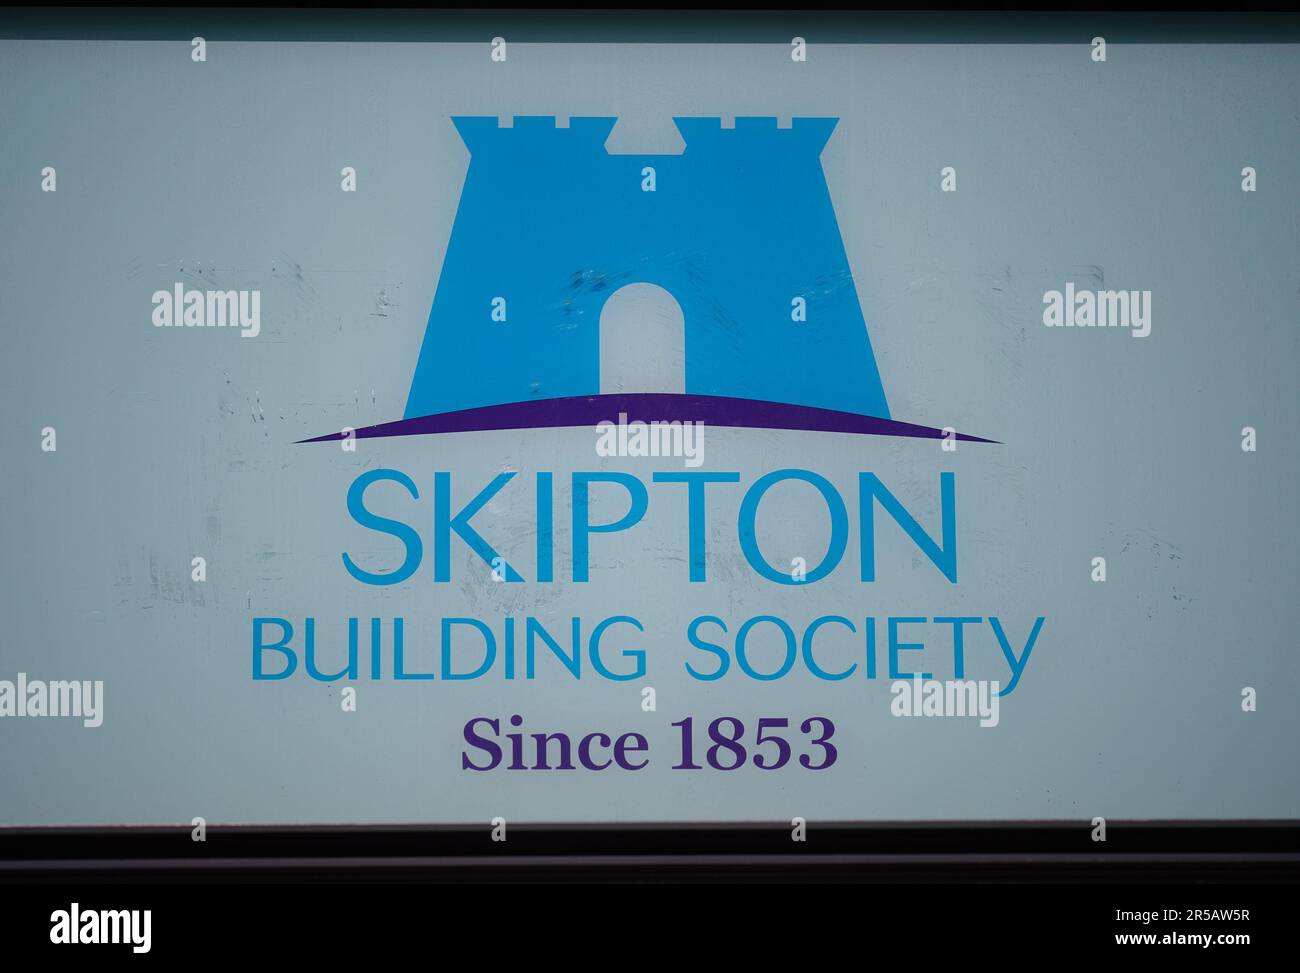 Una visione generale di una filiale della Skipton Building Society a Holborn, Londra, che offre un conto risparmiatore regolare che paga un tasso di interesse del 7,5%, esclusivamente per i membri Skipton esistenti. Data immagine: Venerdì 2 giugno 2023. Foto Stock